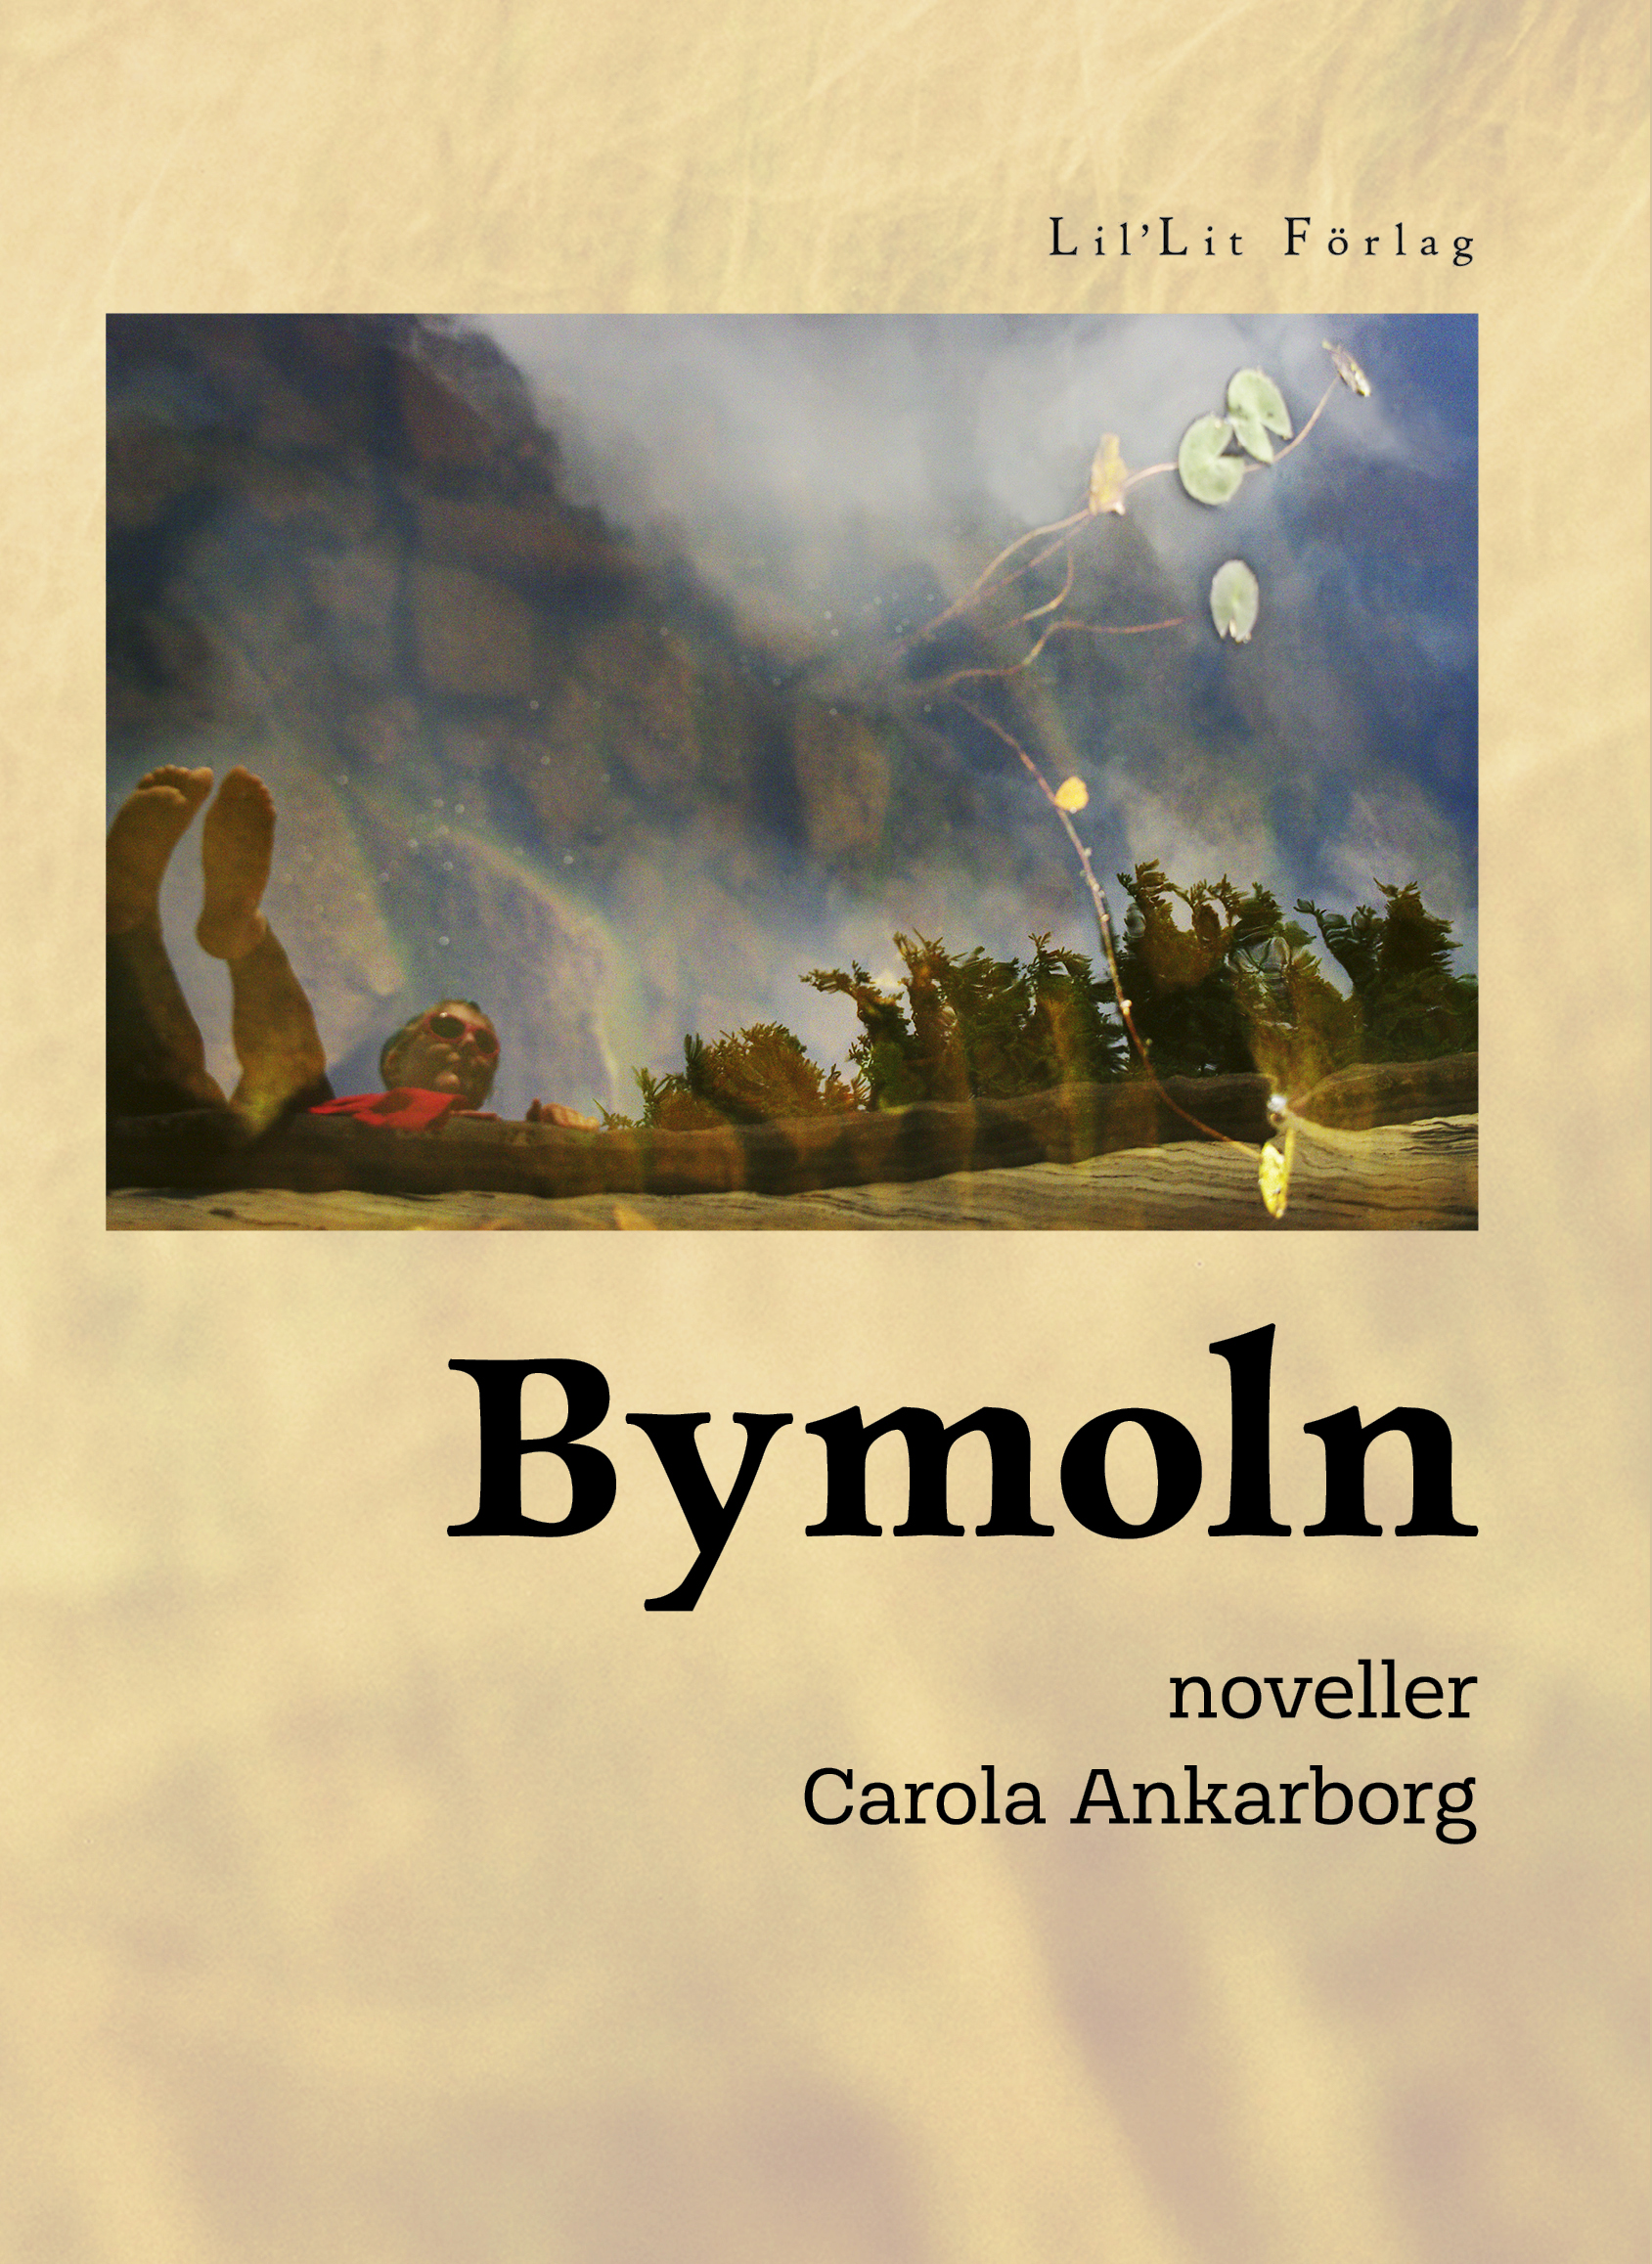 Framsidan av novellsamlingen Bymoln med en illustration av ett landskap mot en beige bakgrund och texten Bymoln.